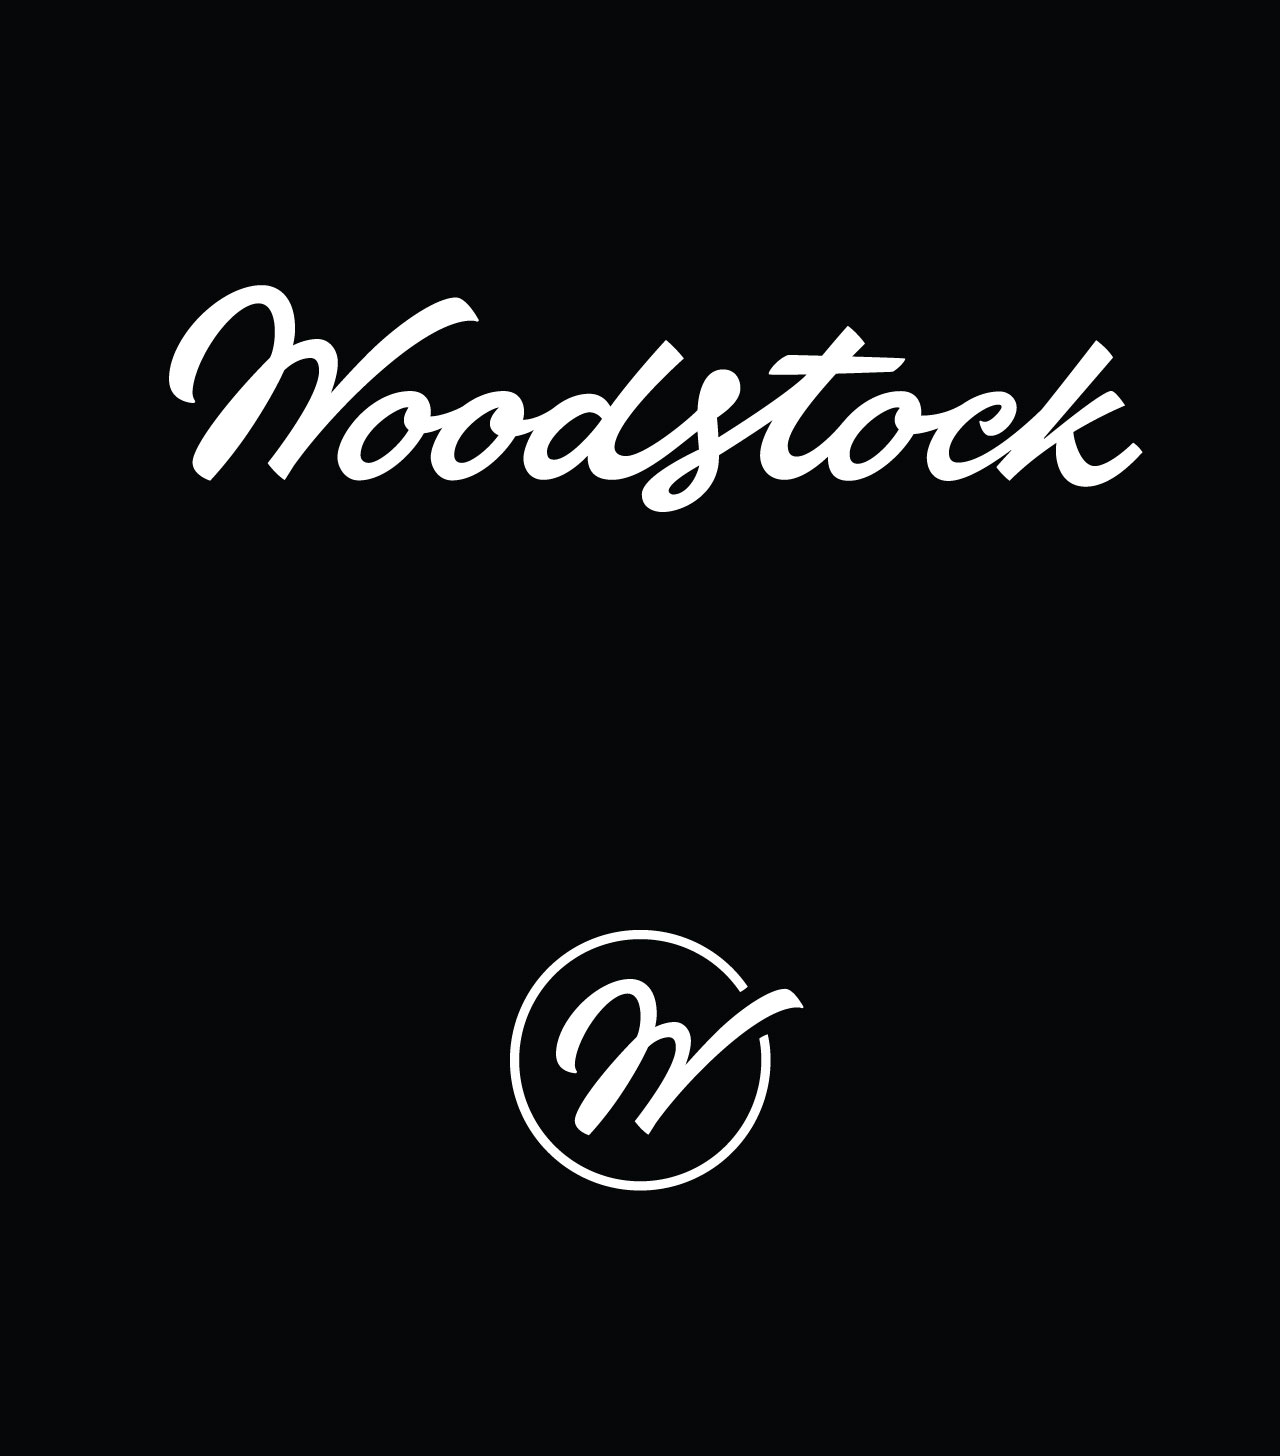 FINAL_Woodstock_logo_3-03